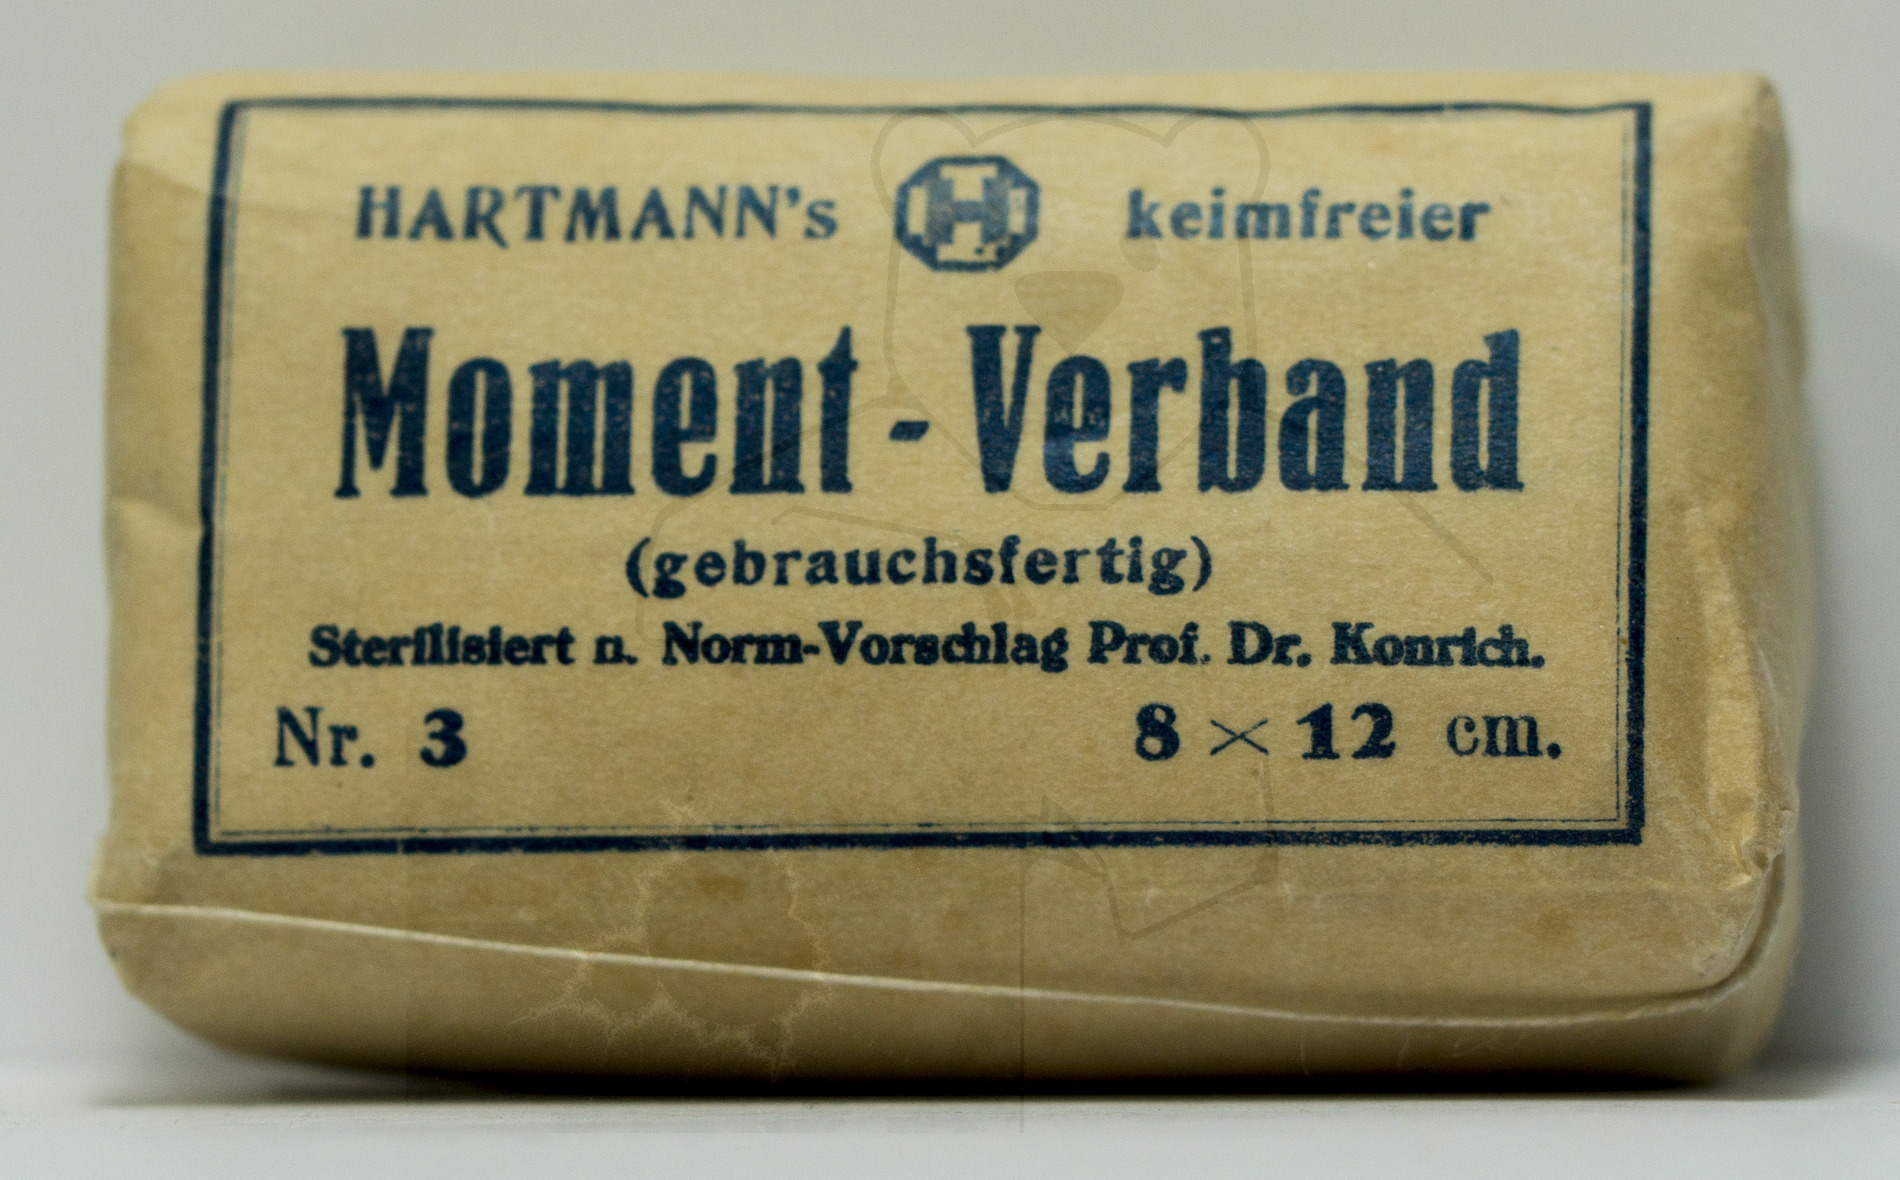 Hartmann's keimfreier Moment-Verband - Gebrauchsfertig, Sterilisiert nach Norm-Vorschlag Prof. Dr. Konrich